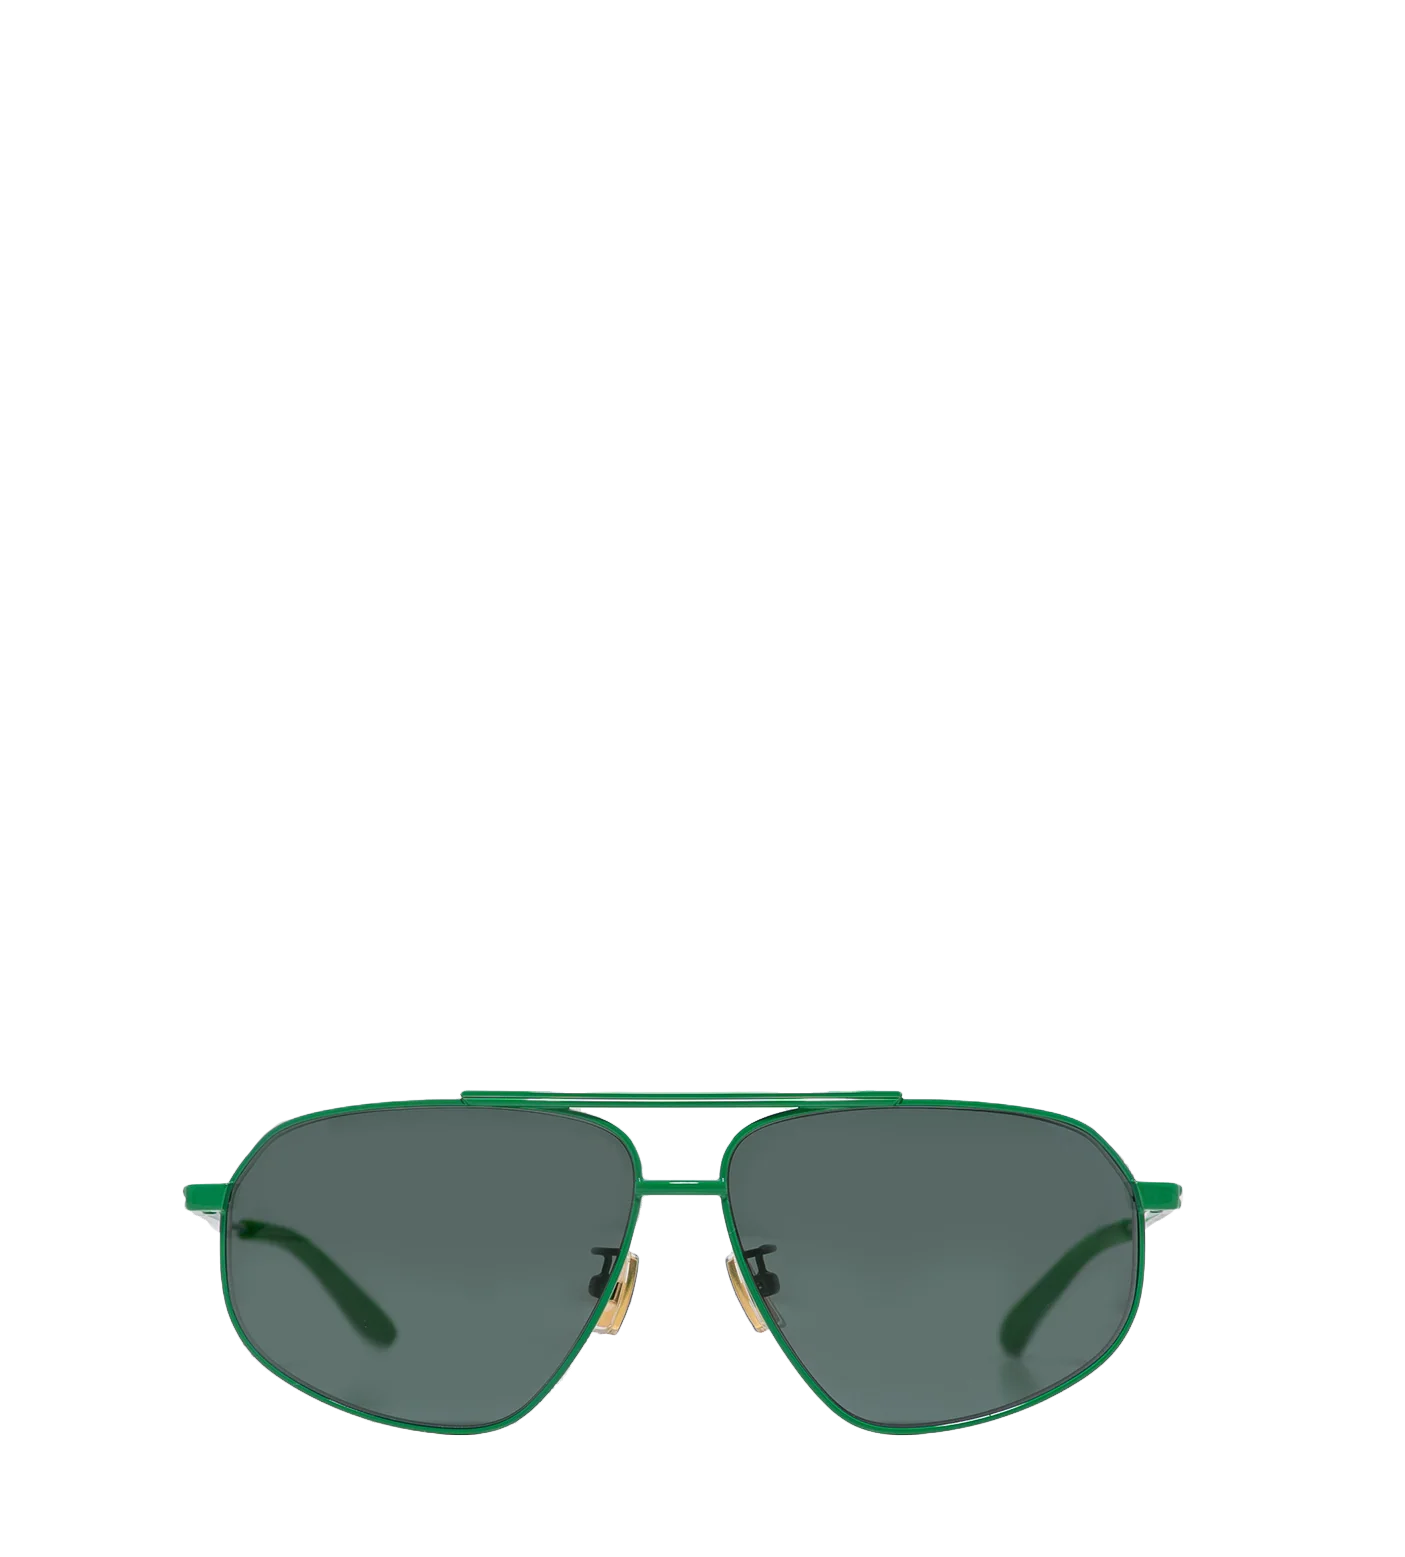 Classic Sunglasses Green